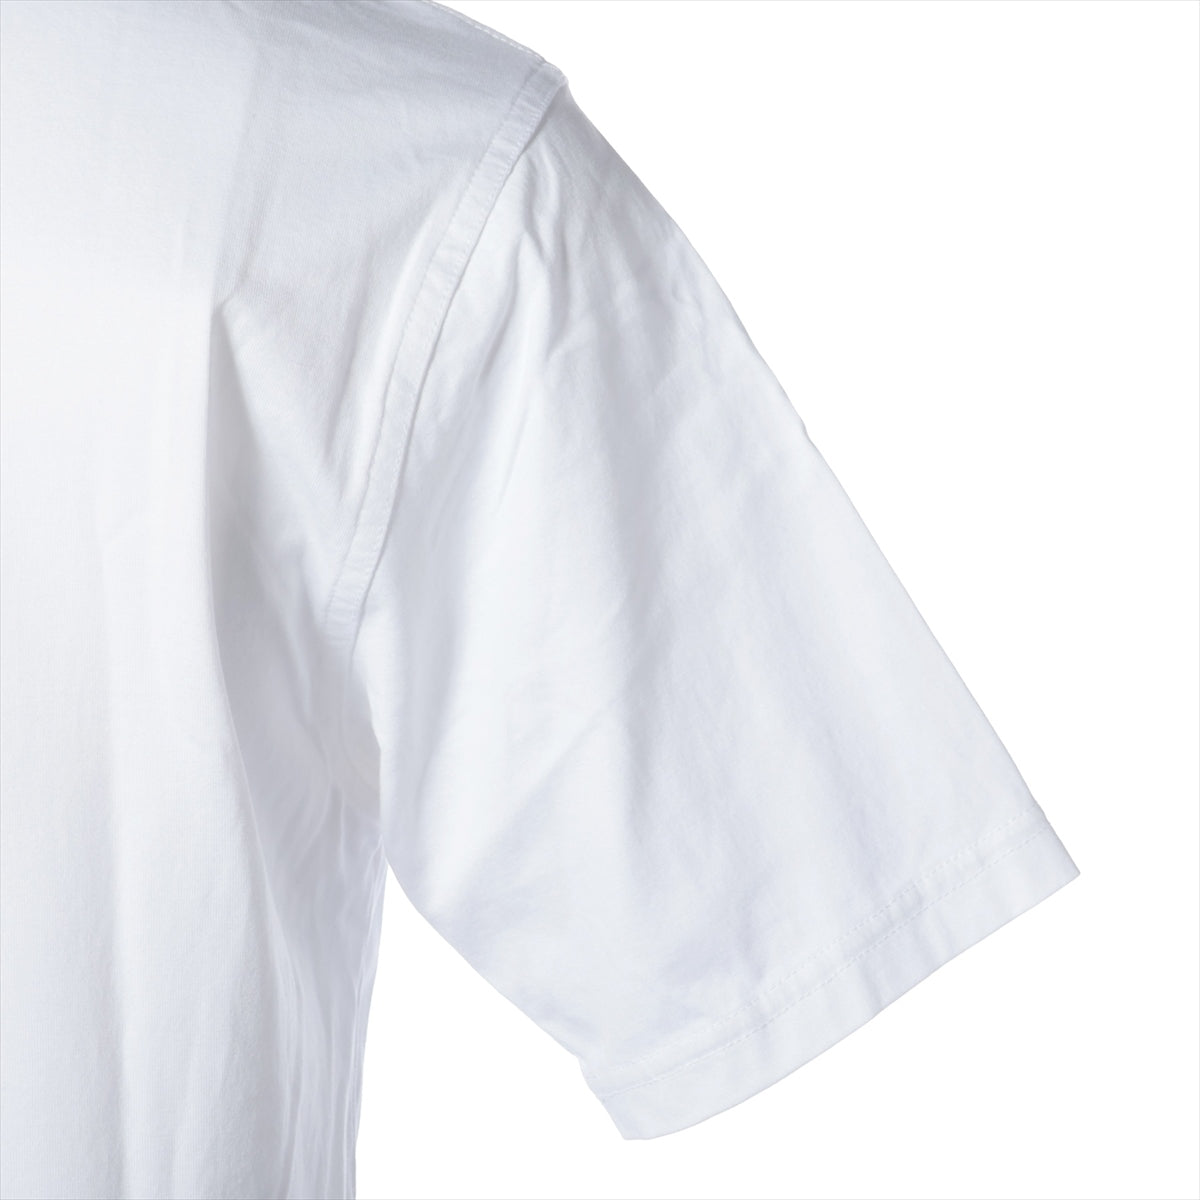 バーバリー コットン Tシャツ XS メンズ ホワイト 8053009 ロゴ 